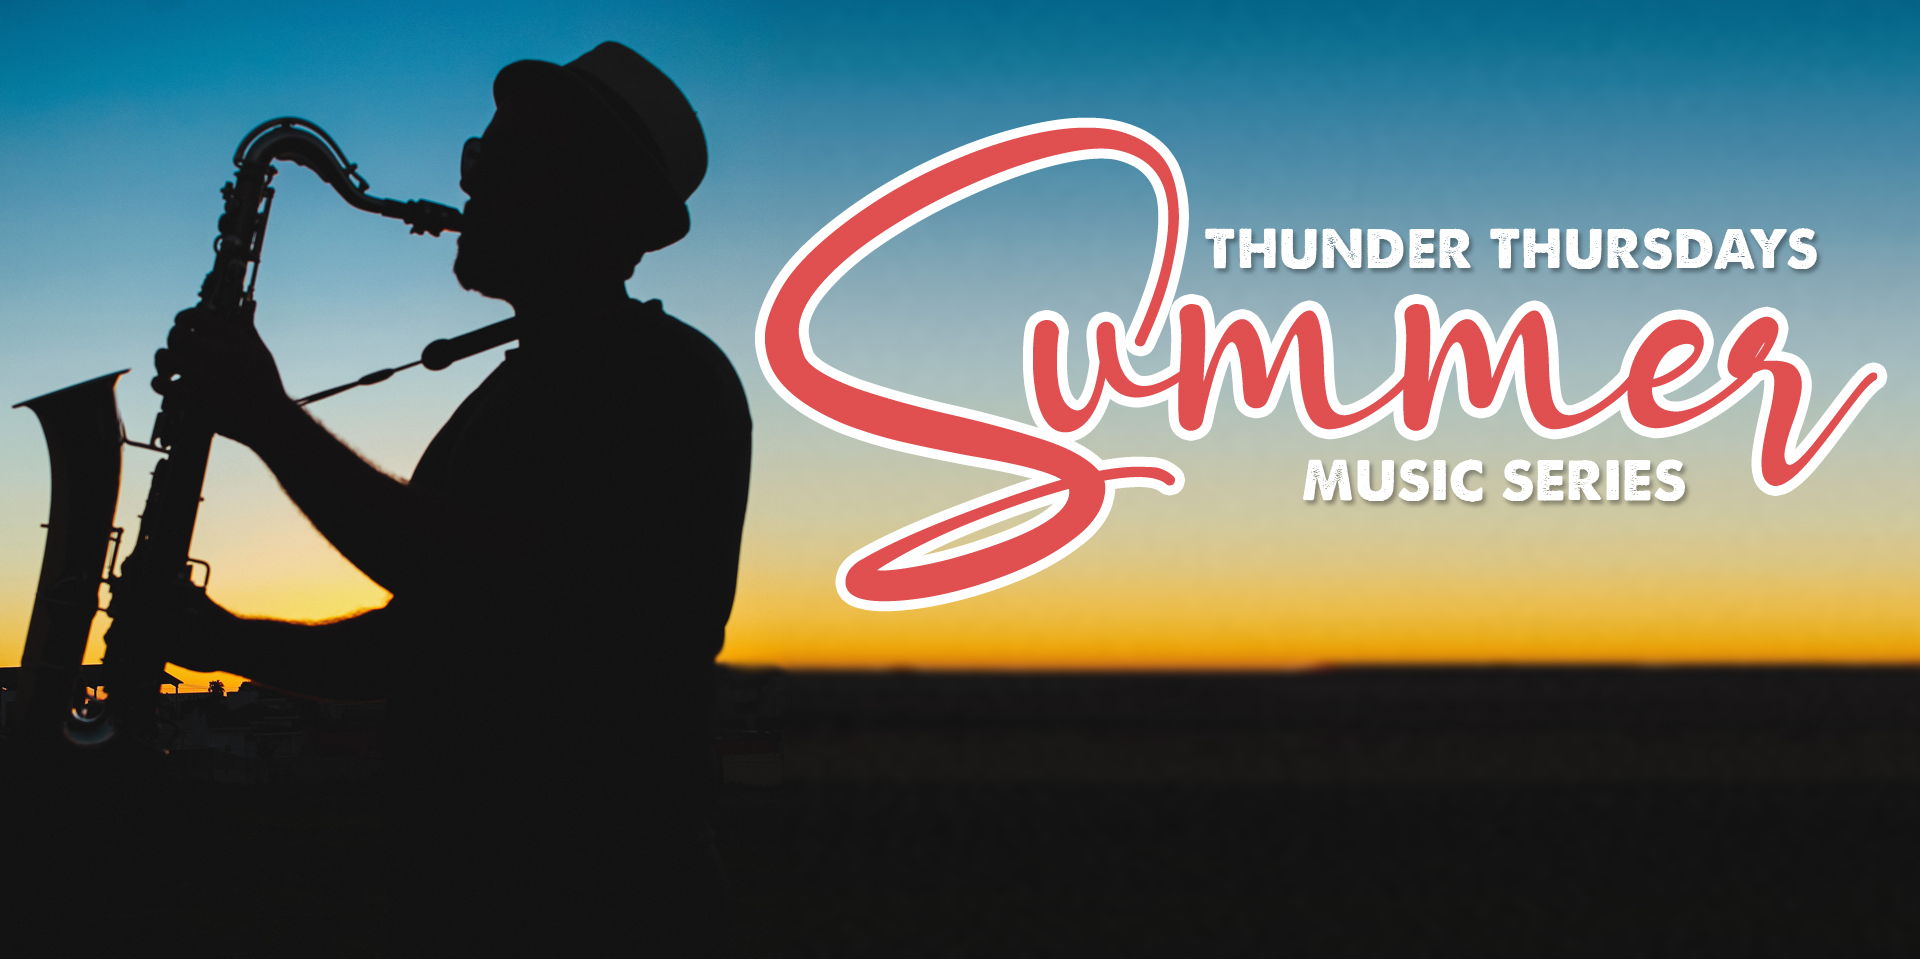 Miller Lite Thunder Thursdays Summer Music Series promotional image